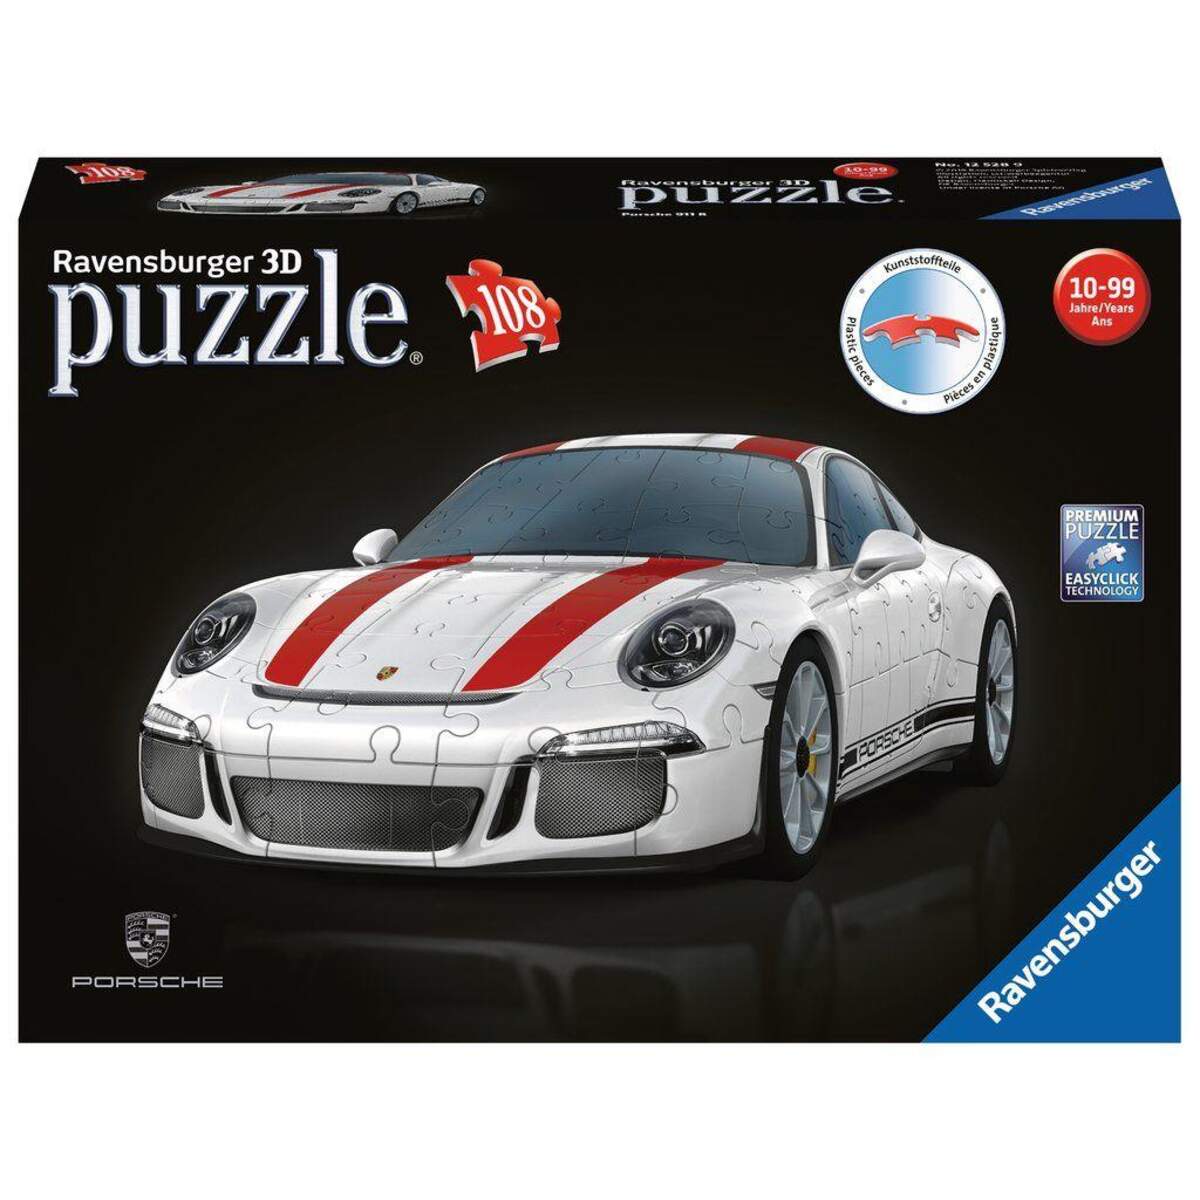 Ravensburger 3D Puzzle Porsche 911 R, 108 Teile